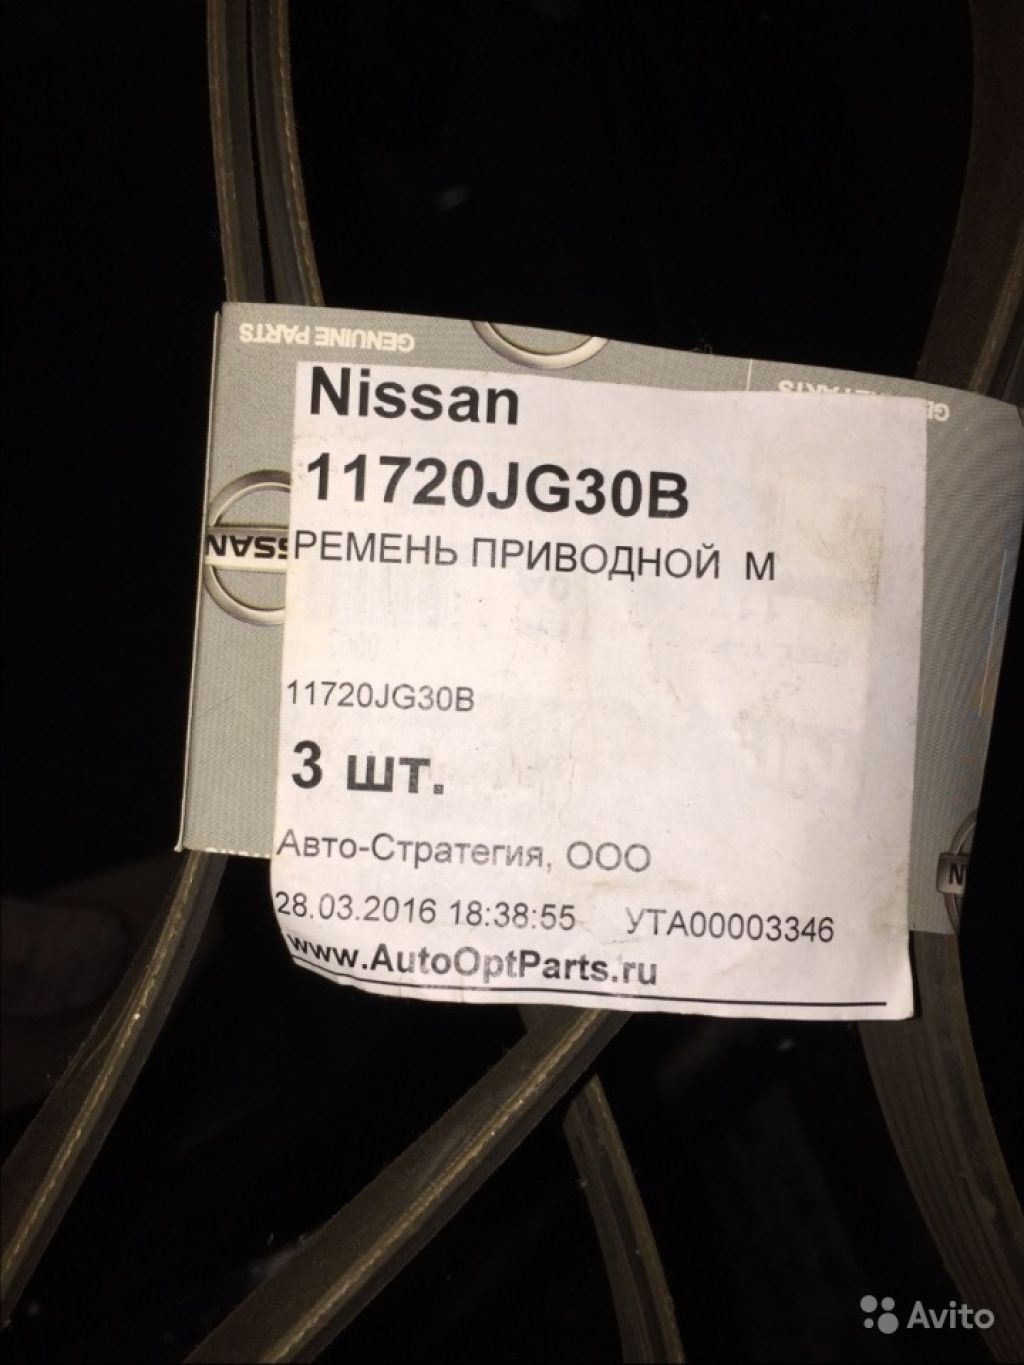 Ремень приводной м Nissan 11720JG30B в Москве. Фото 1